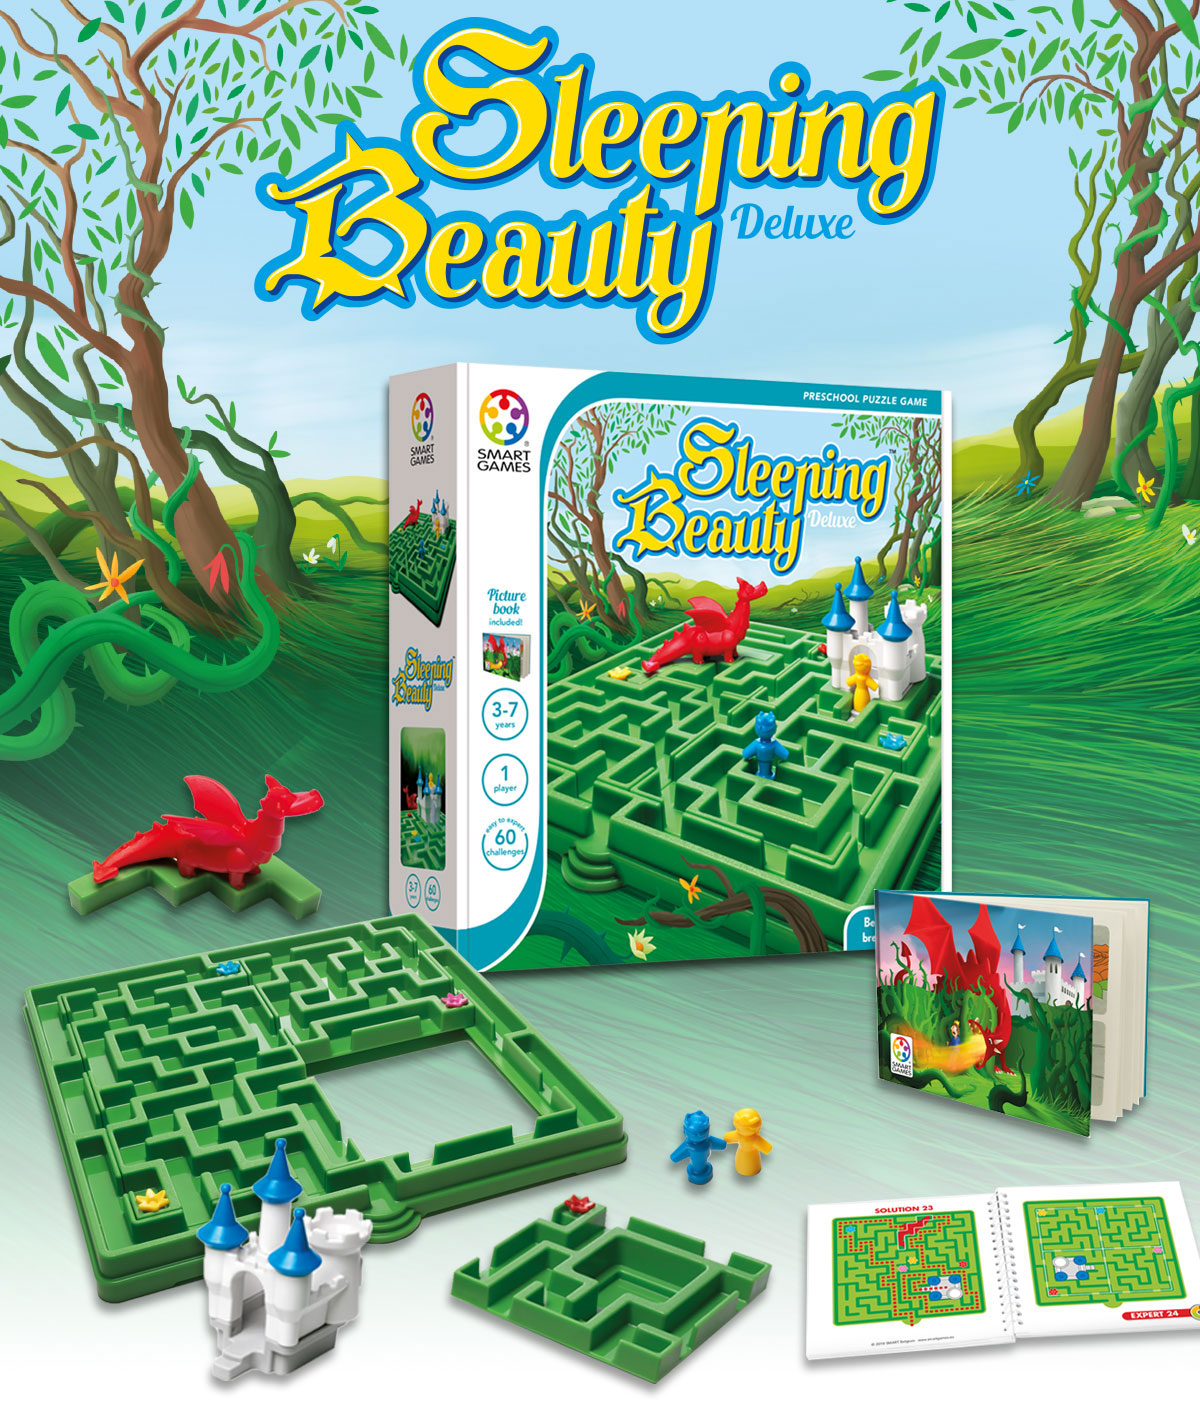 Sleeping Beauty Smartgames